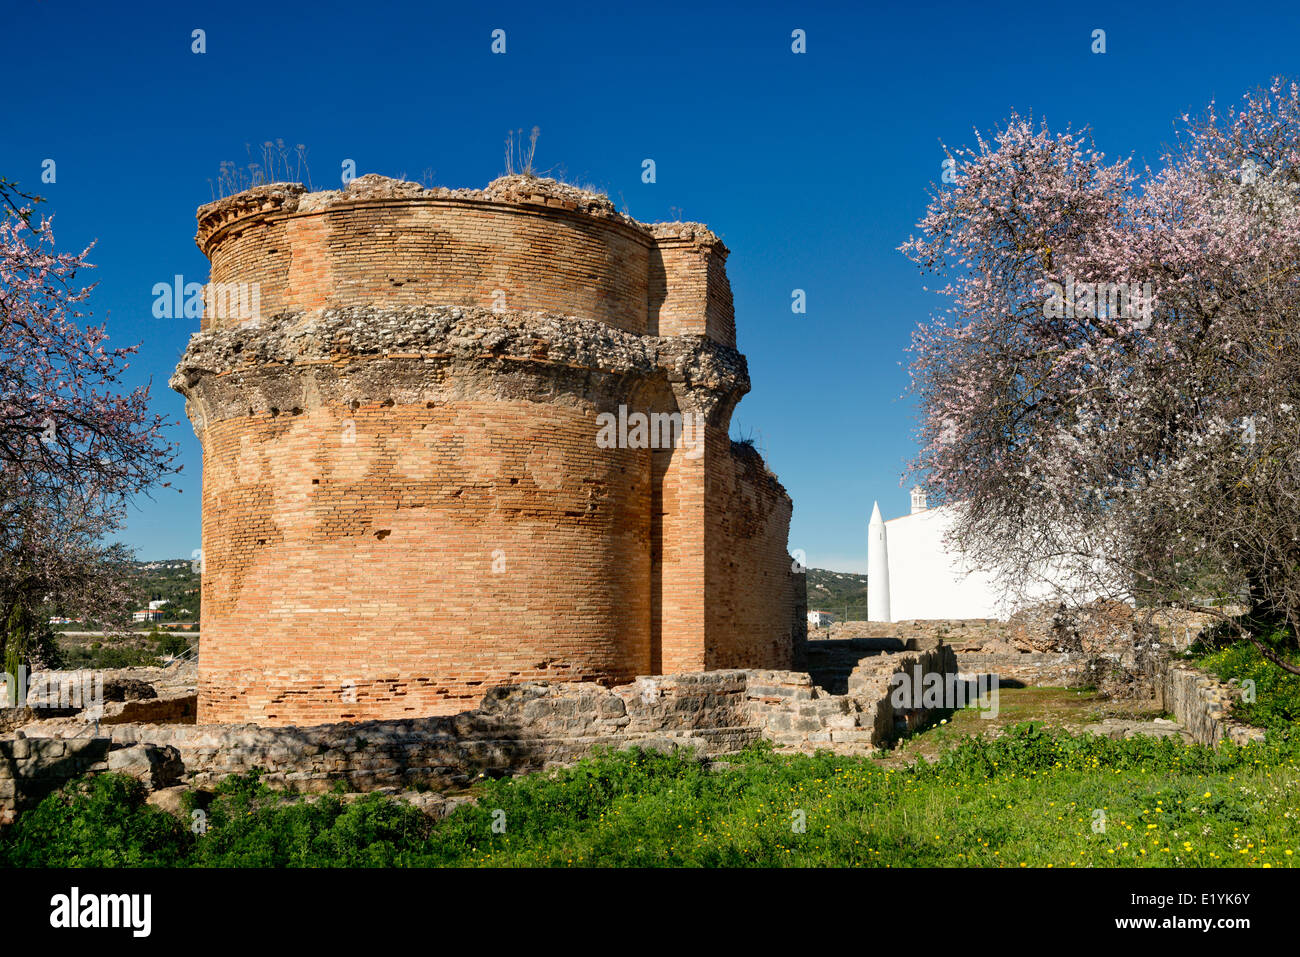 Sito archeologico romano Milréu, Estoi, Algarve, Portogallo, Foto Stock